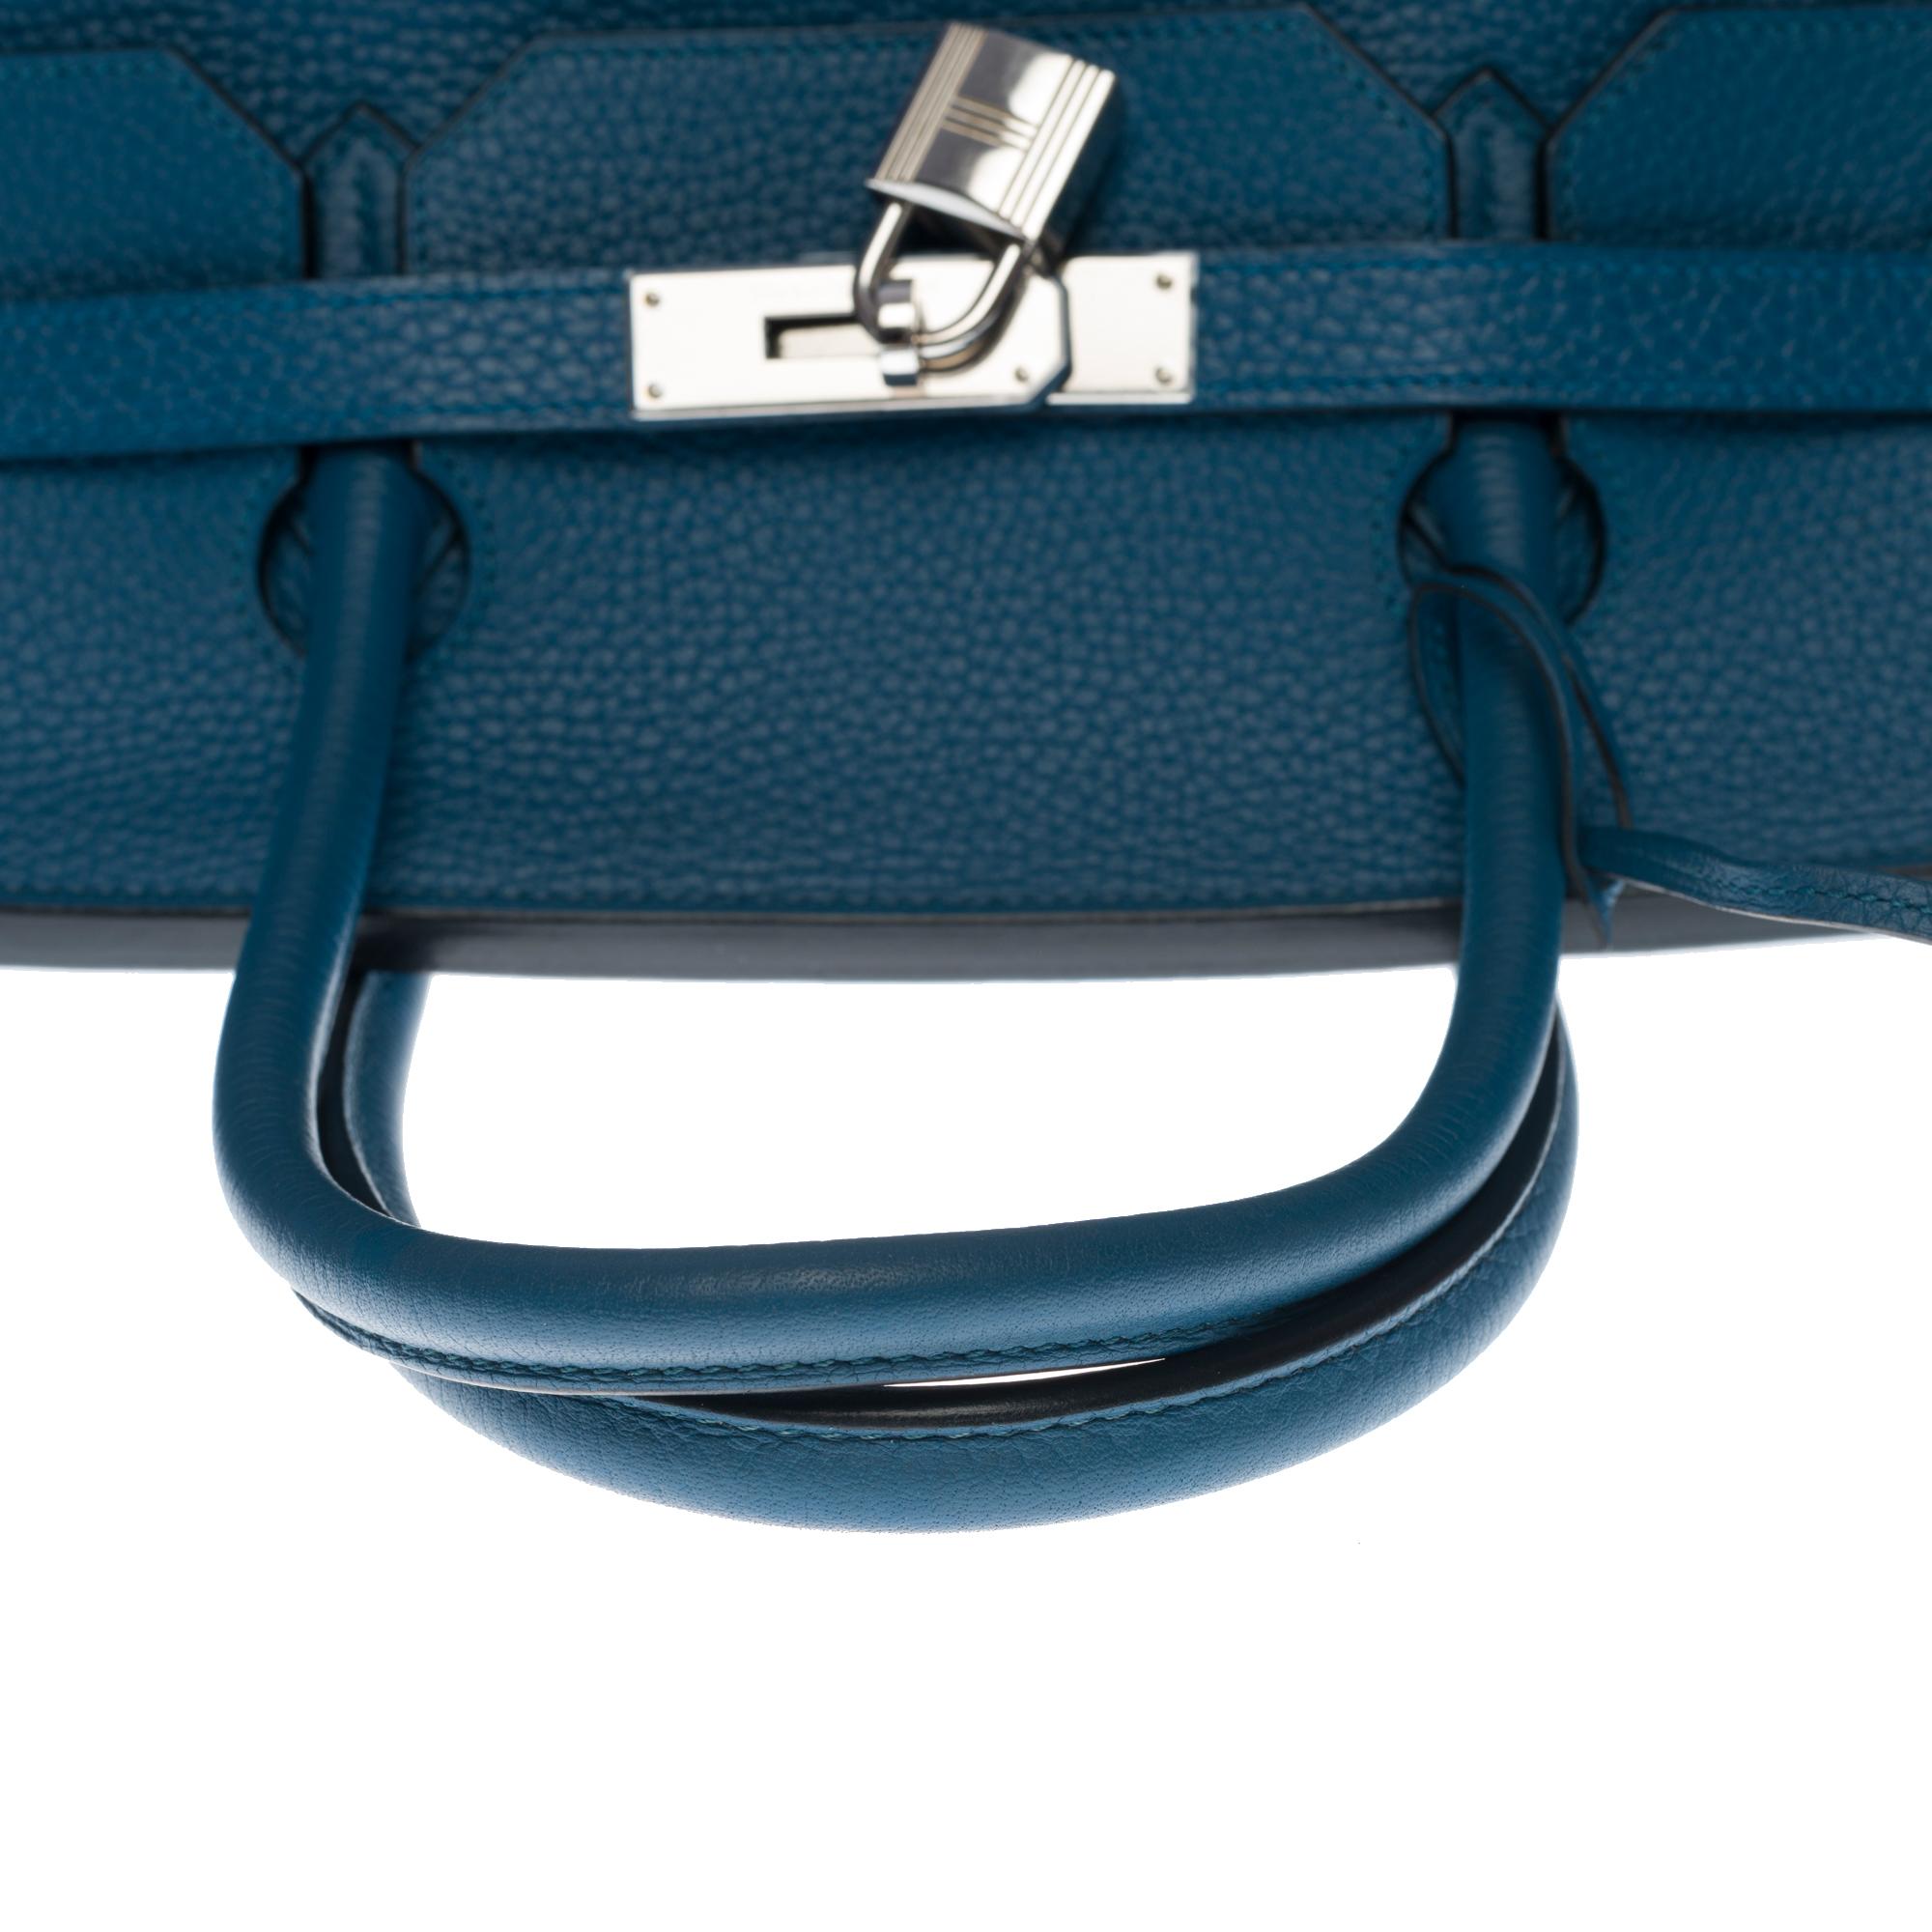 Stunning Hermes Birkin 40cm handbag in Blue Cobalt Togo leather, SHW 1